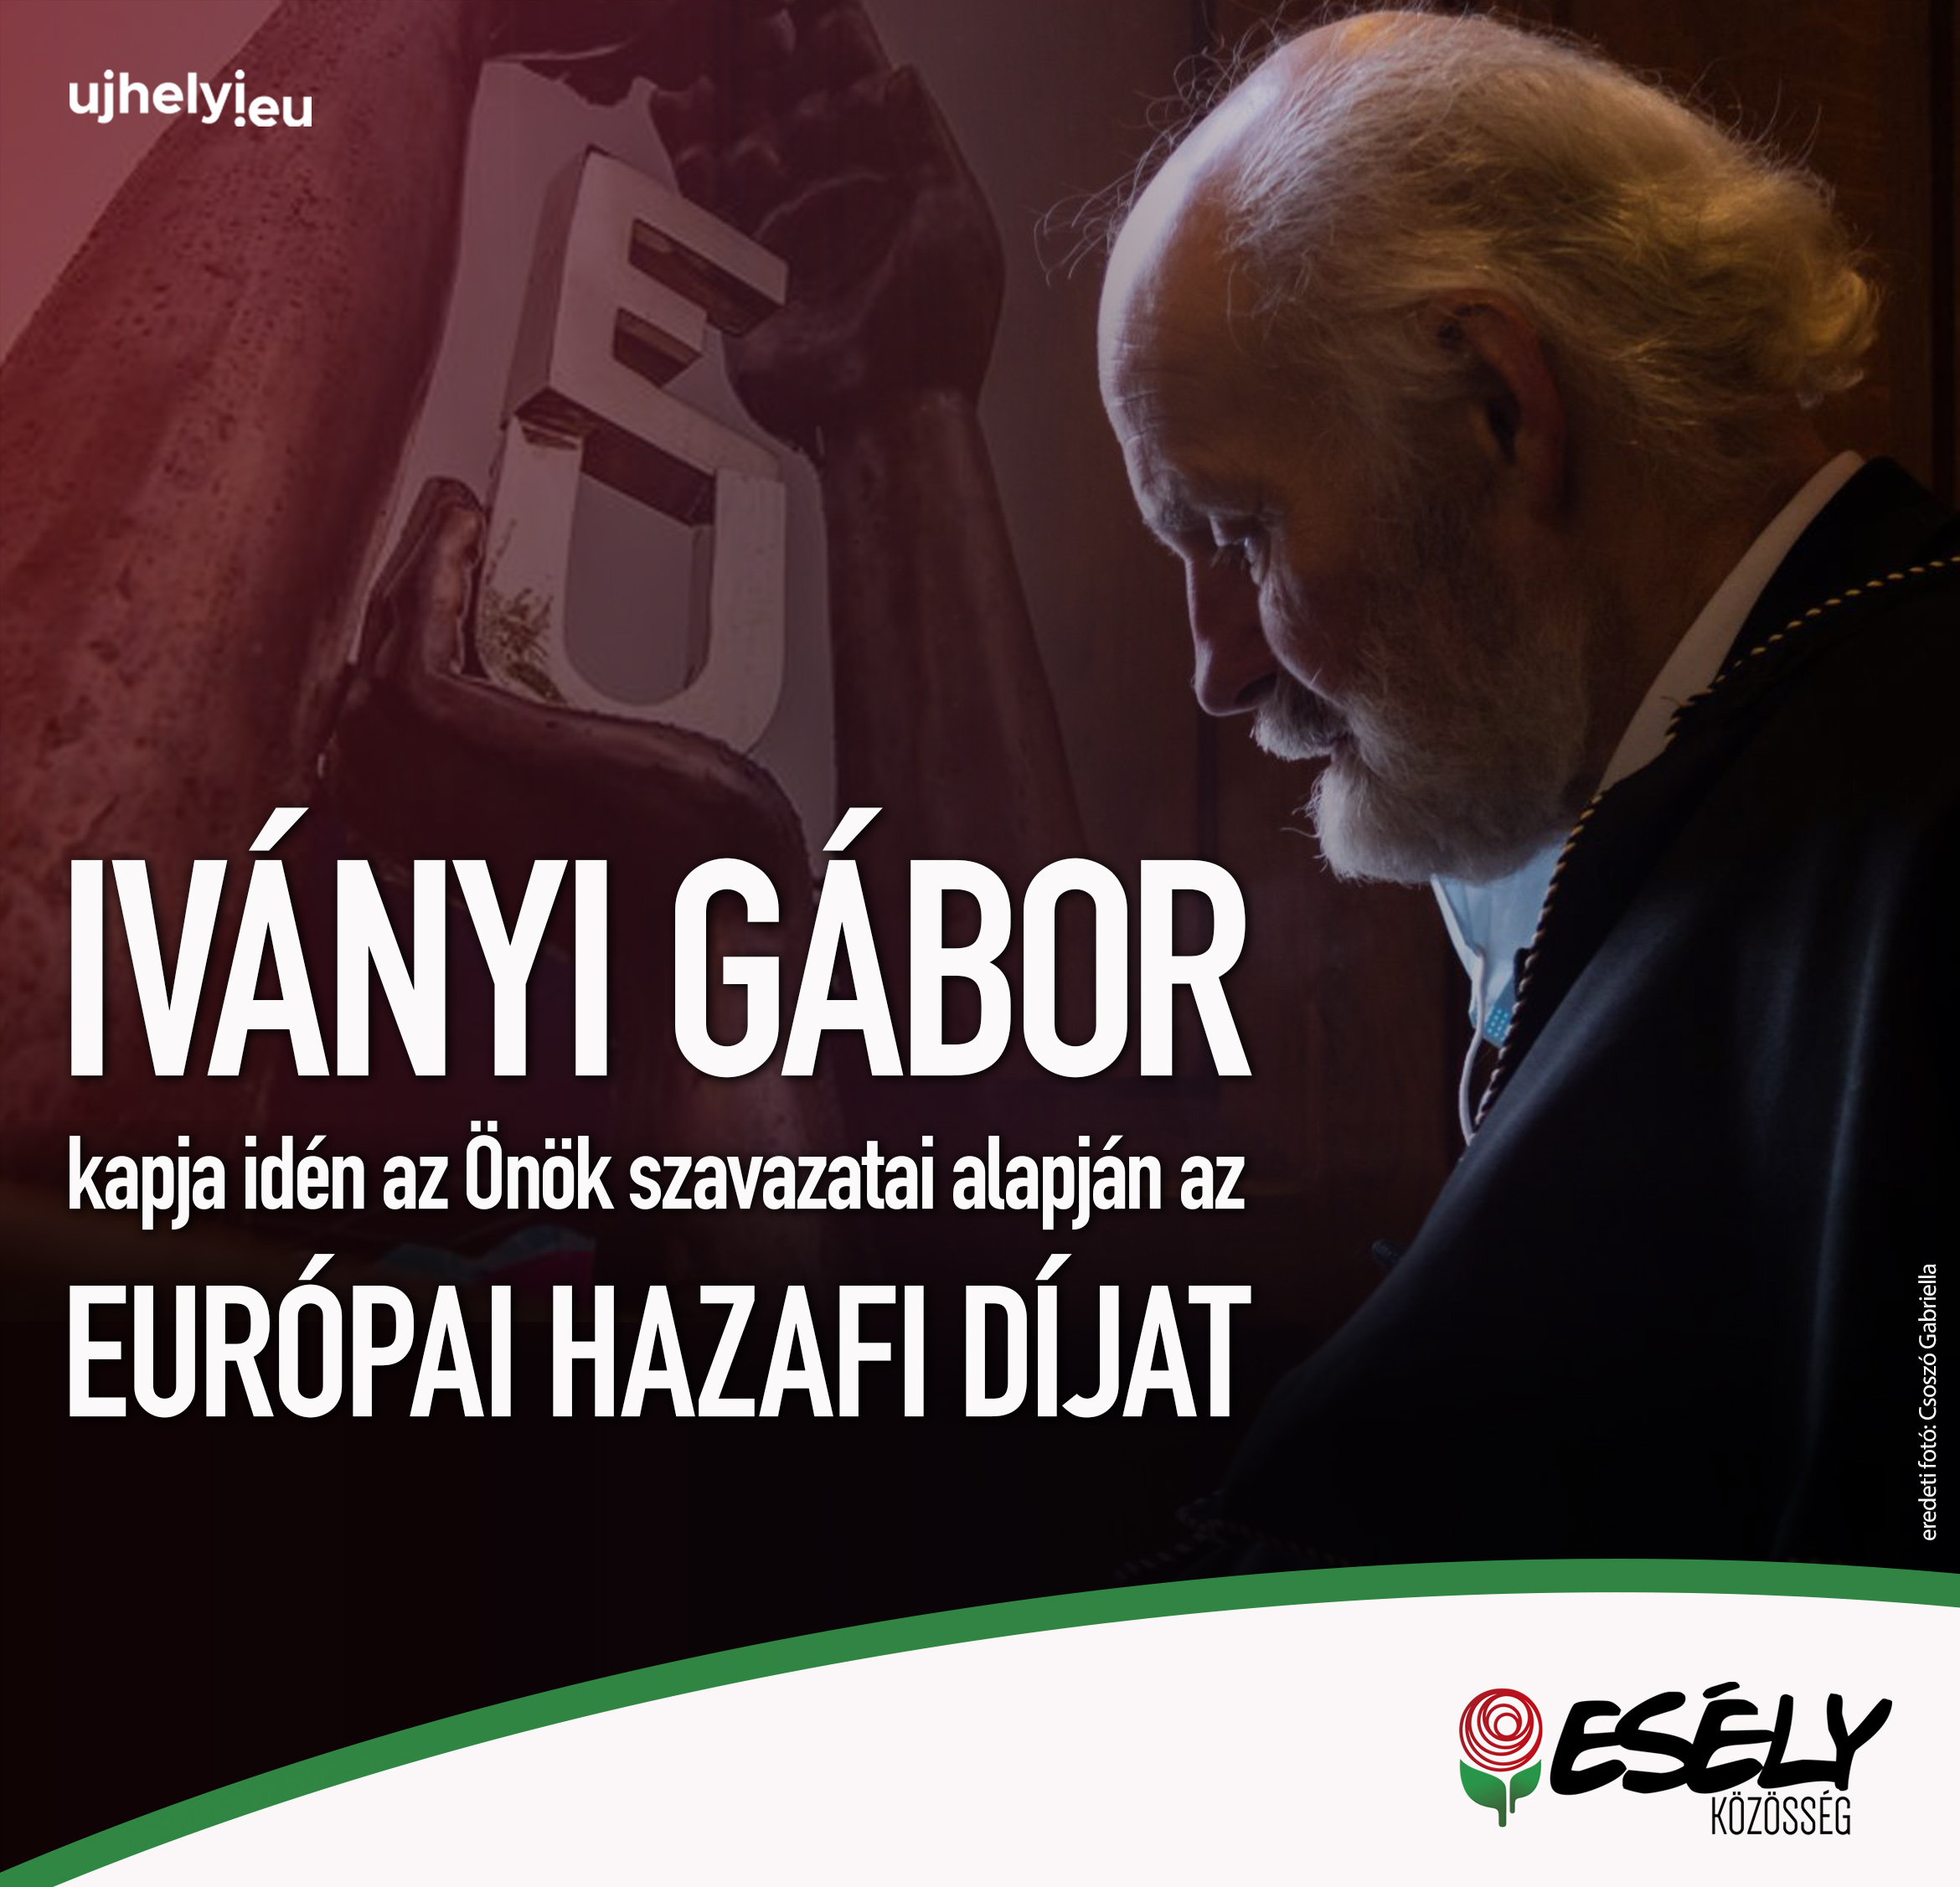 Iványi Gábor nyerte idén az Európai Hazafi Díjat